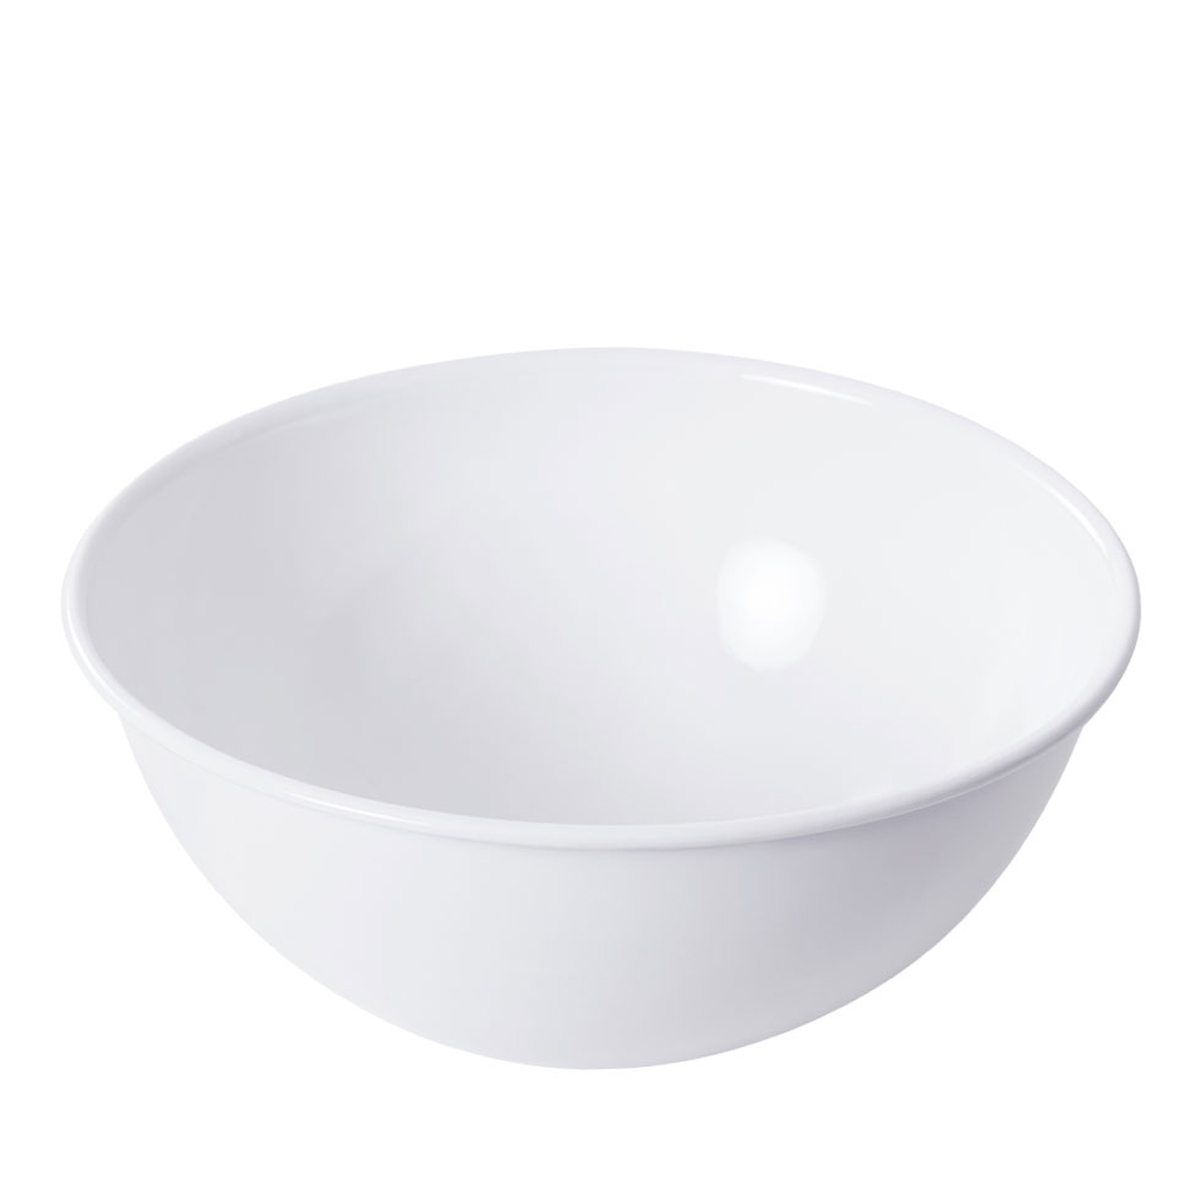 Riess Classic Weiß Obstschüssel / Salatschüssel 30 cm / 5,0 Liter / aus Emaille